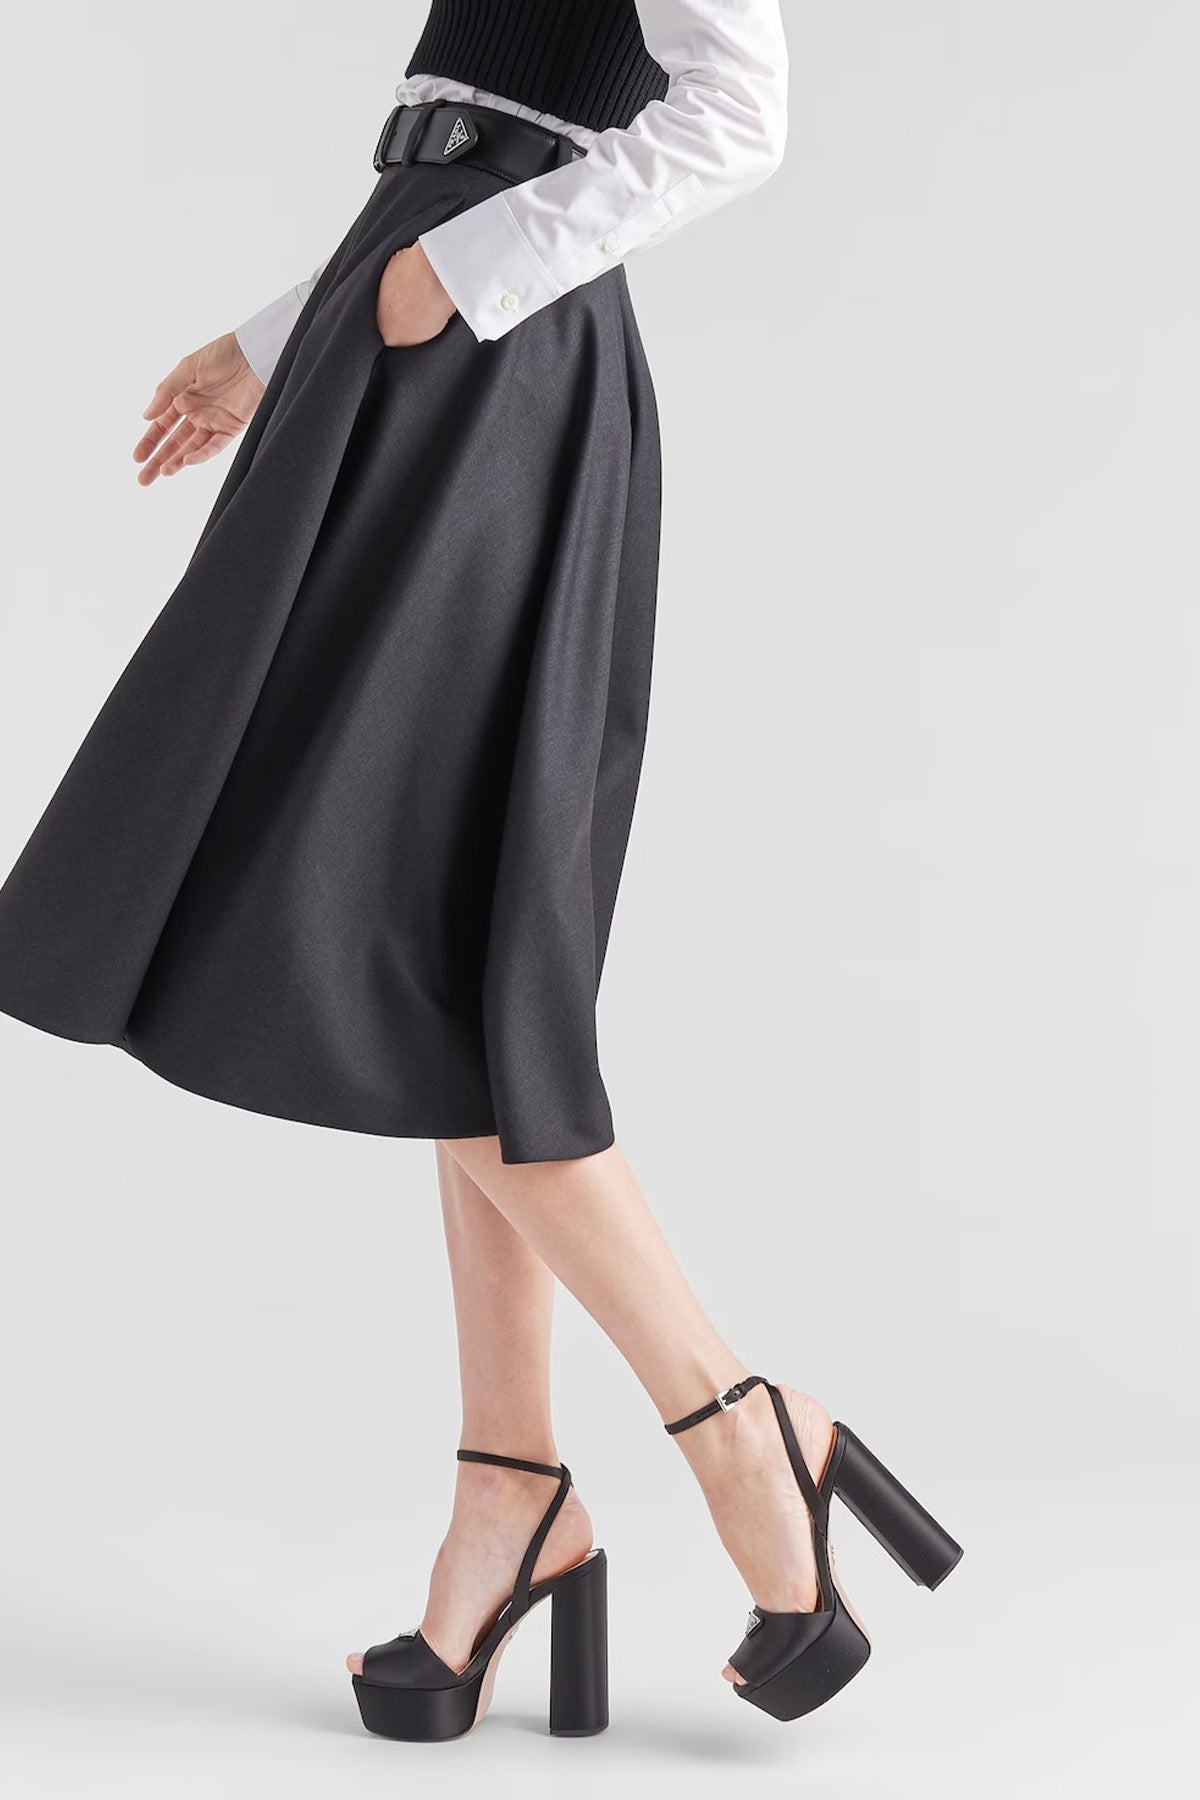 Prada Platformlu Saten Kaplamalı Küt Burun Topuklu Ayakkabı-Libas Trendy Fashion Store